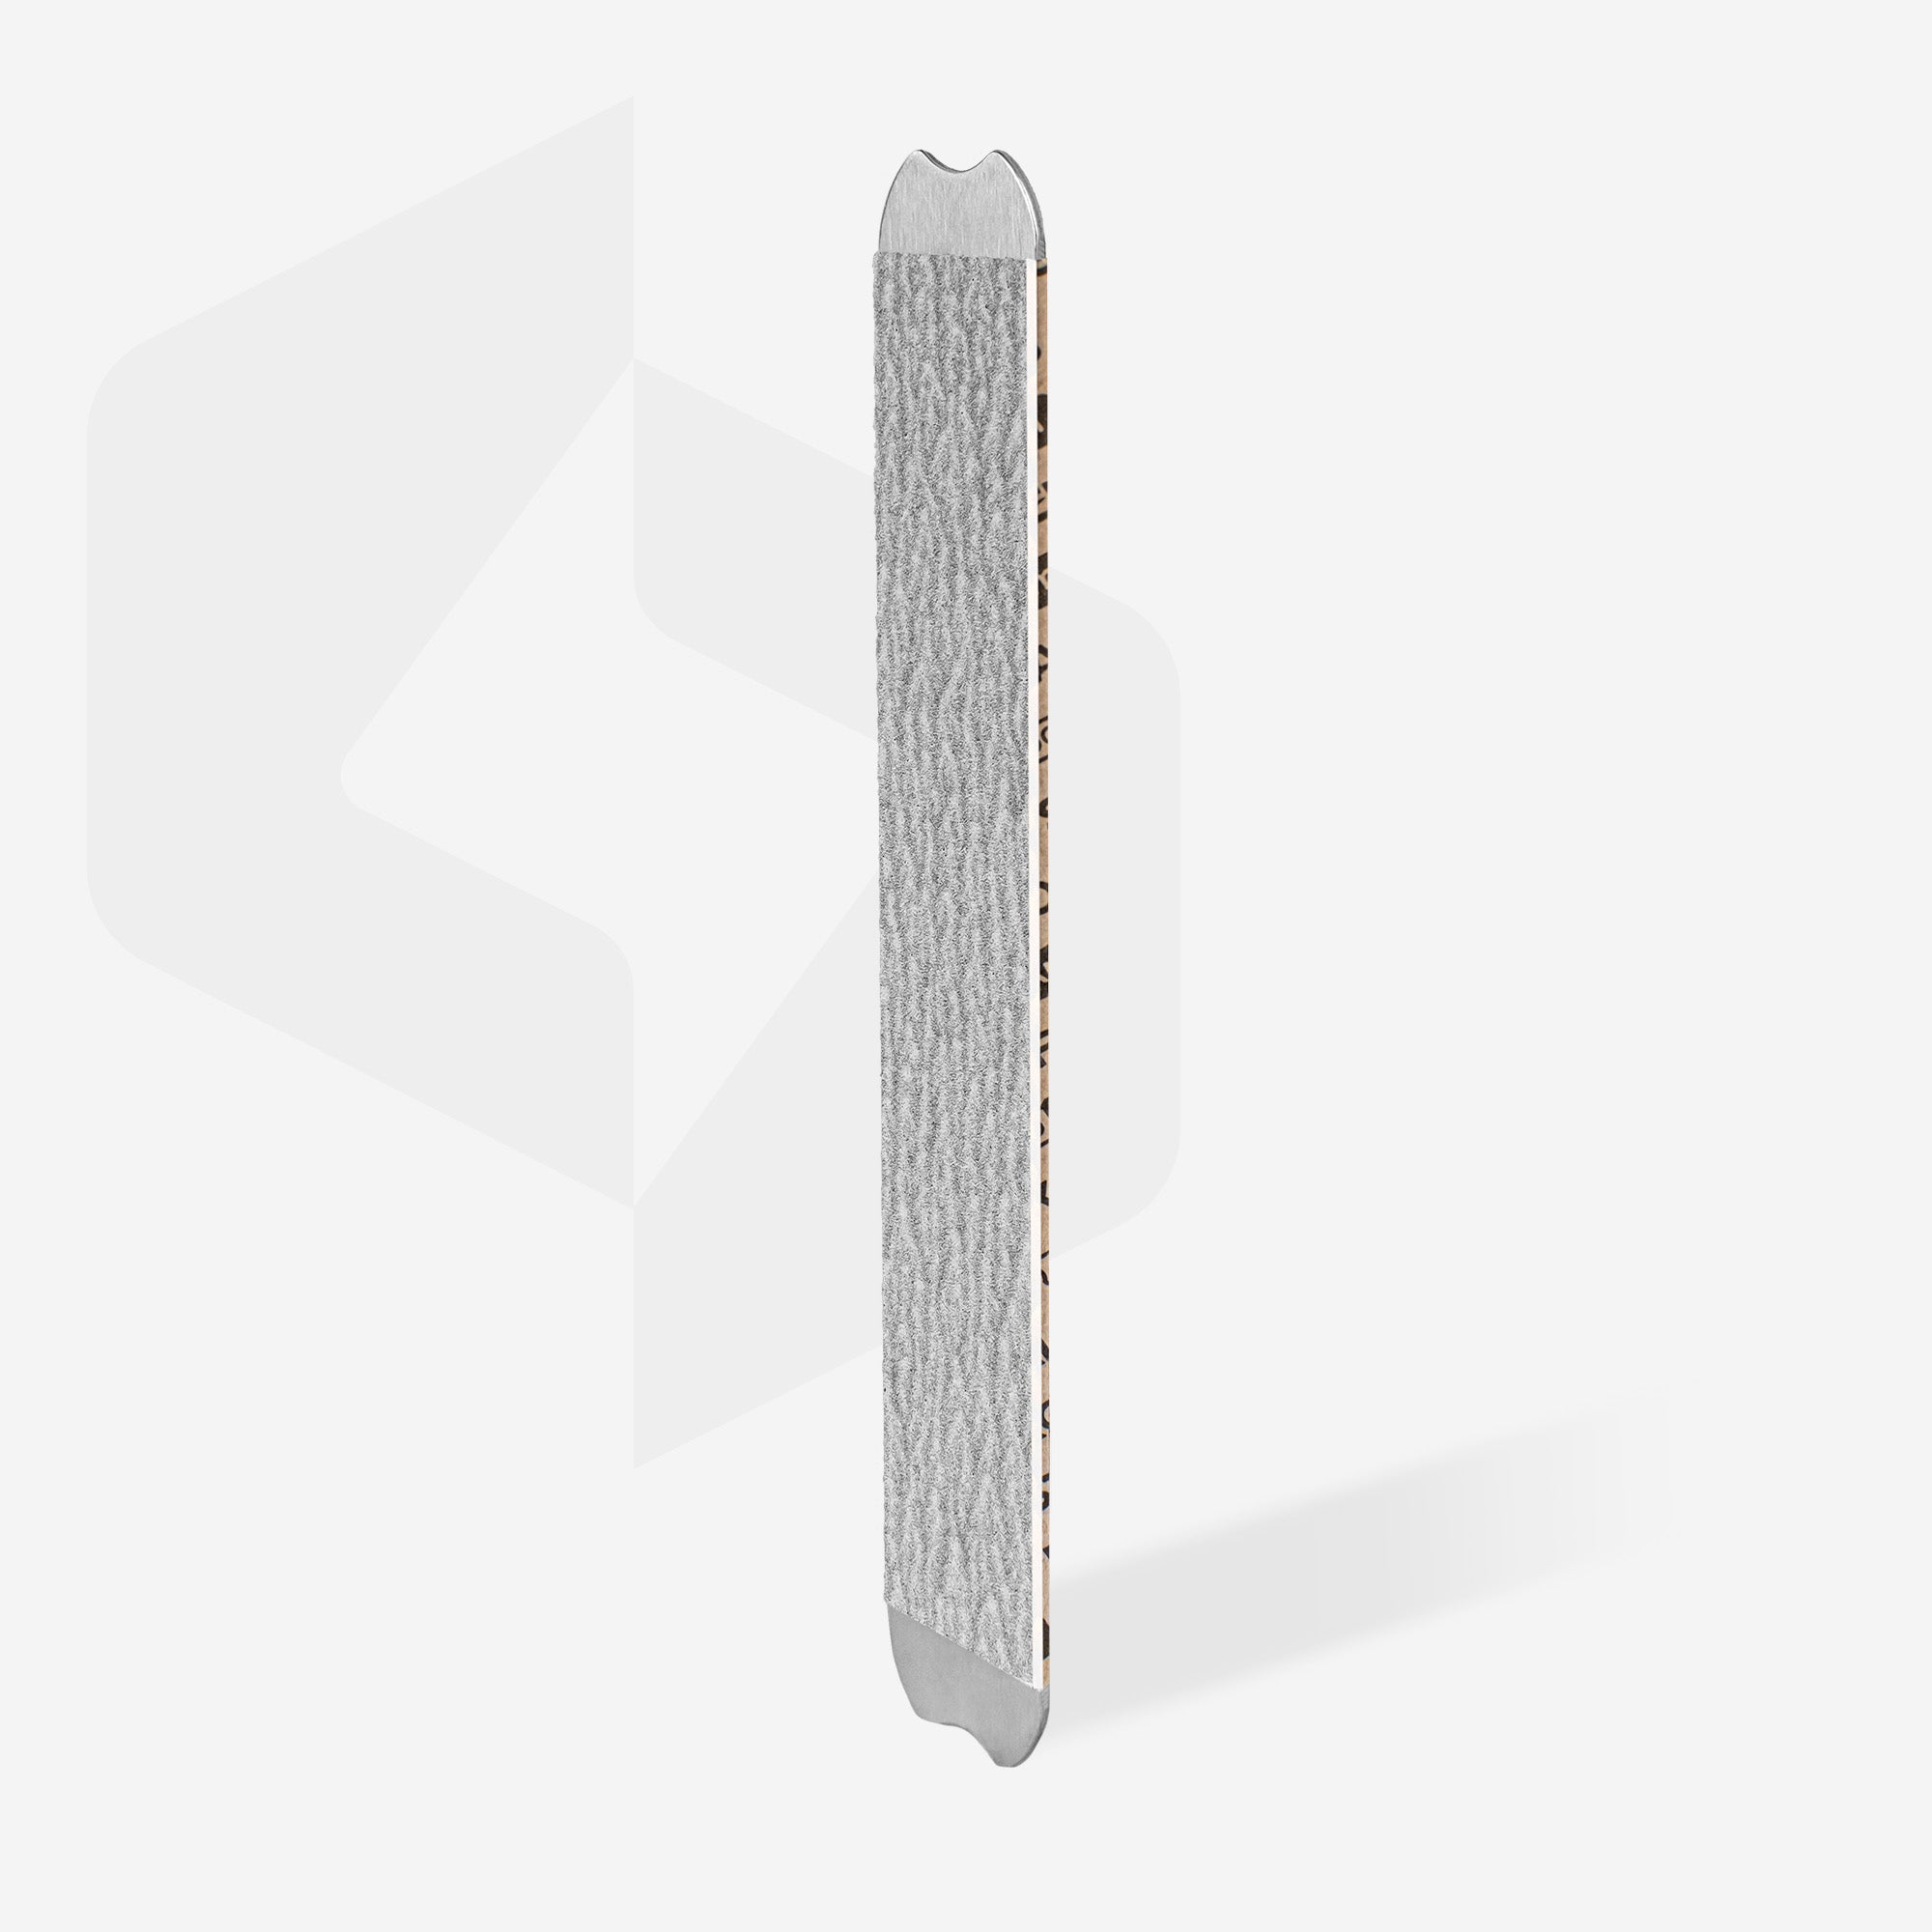 Jednorázové pilníky papmAm (měkký základ) pro rovný pilník SMART 20 (30 ks)